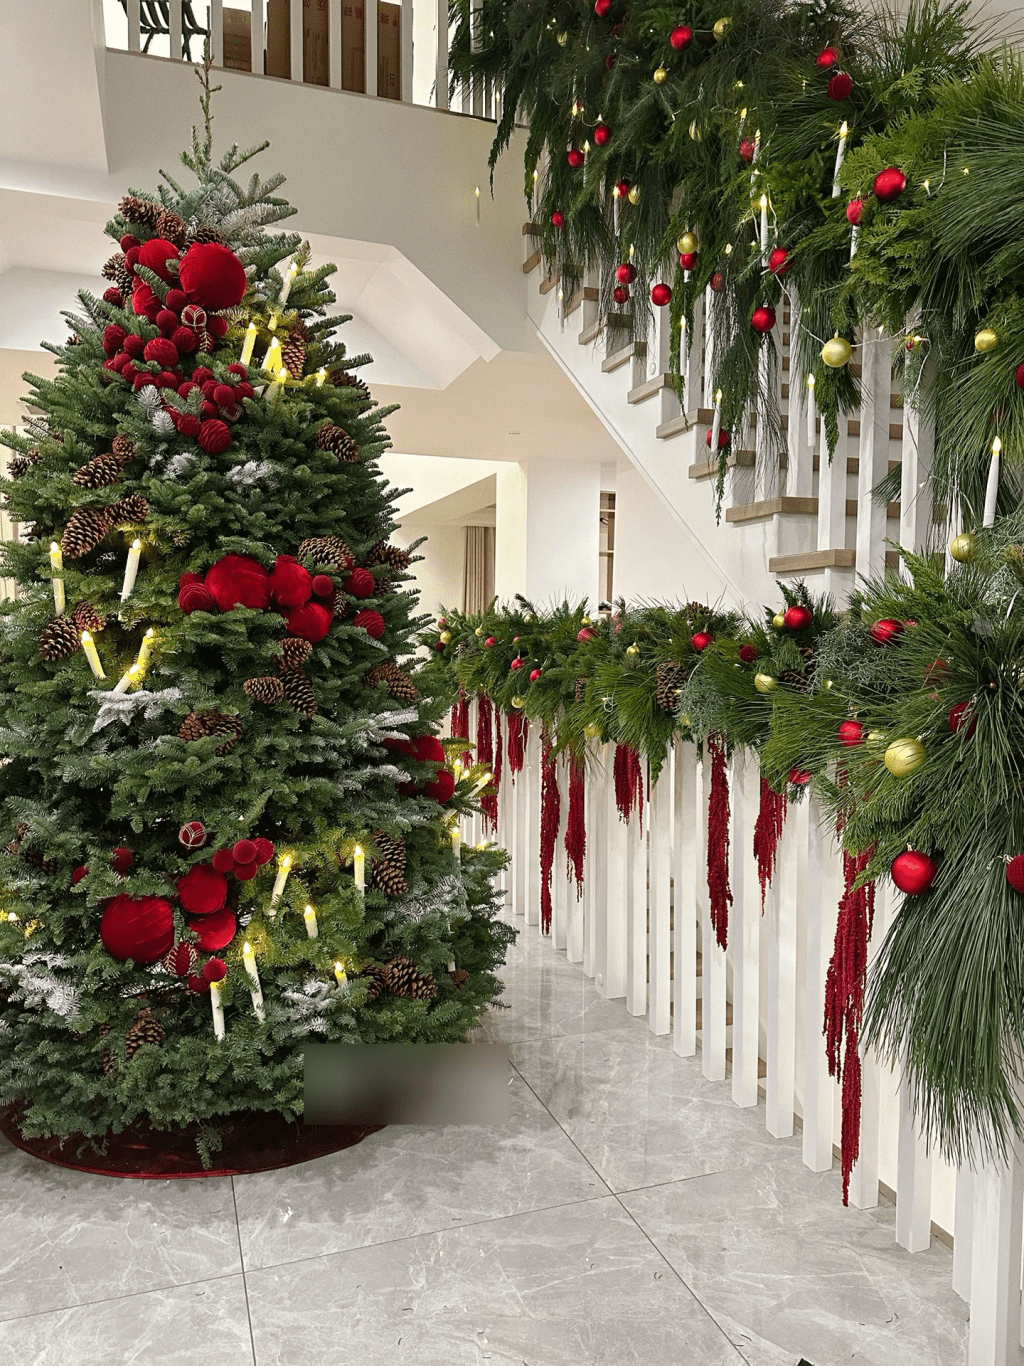 室內裝潢主要走純白簡約風，走廊位置擺放了一棵逾兩米高的巨型聖誕樹，但依然未掂到天花，可見樓底極之高。